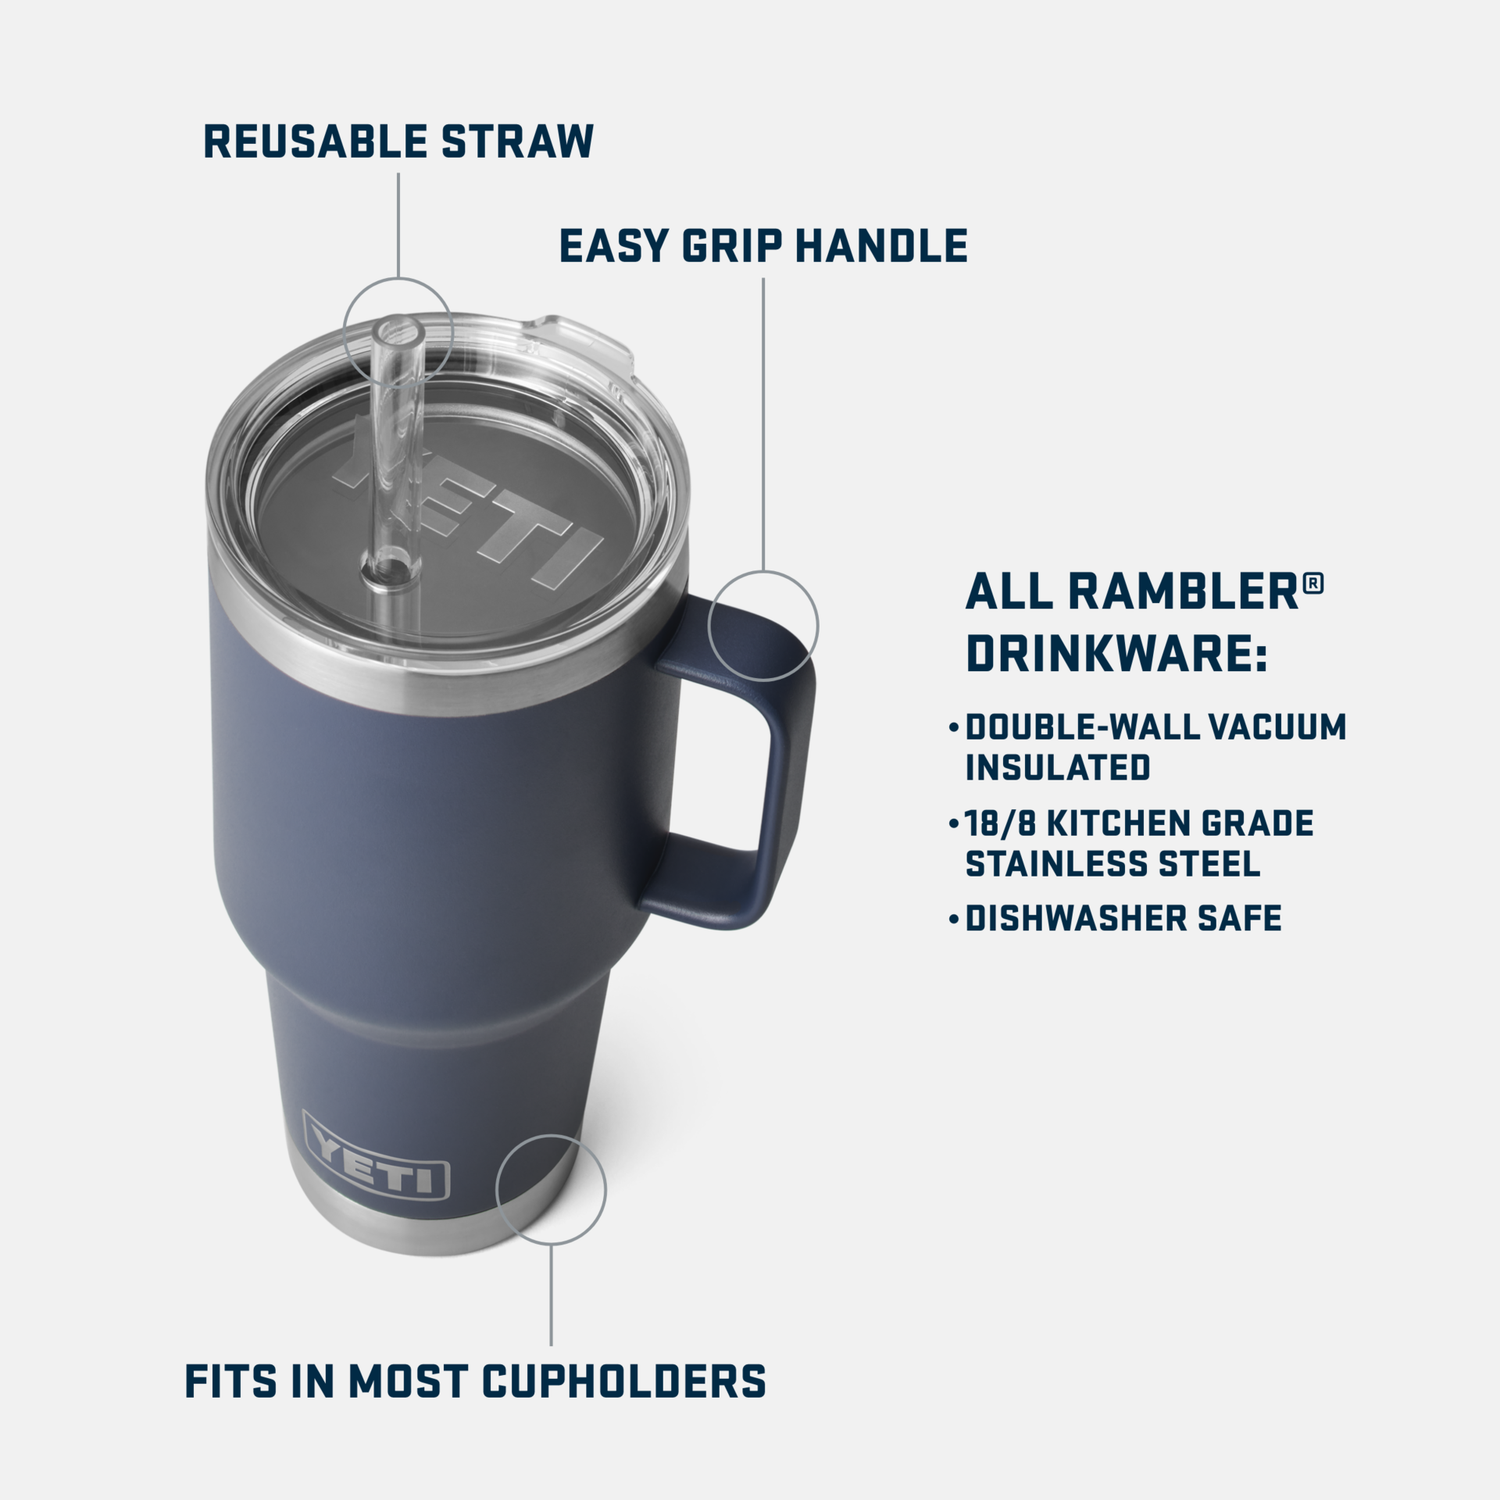 YETI Rambler® 35 oz (994 ml) Straw Mug Cosmic Lilac